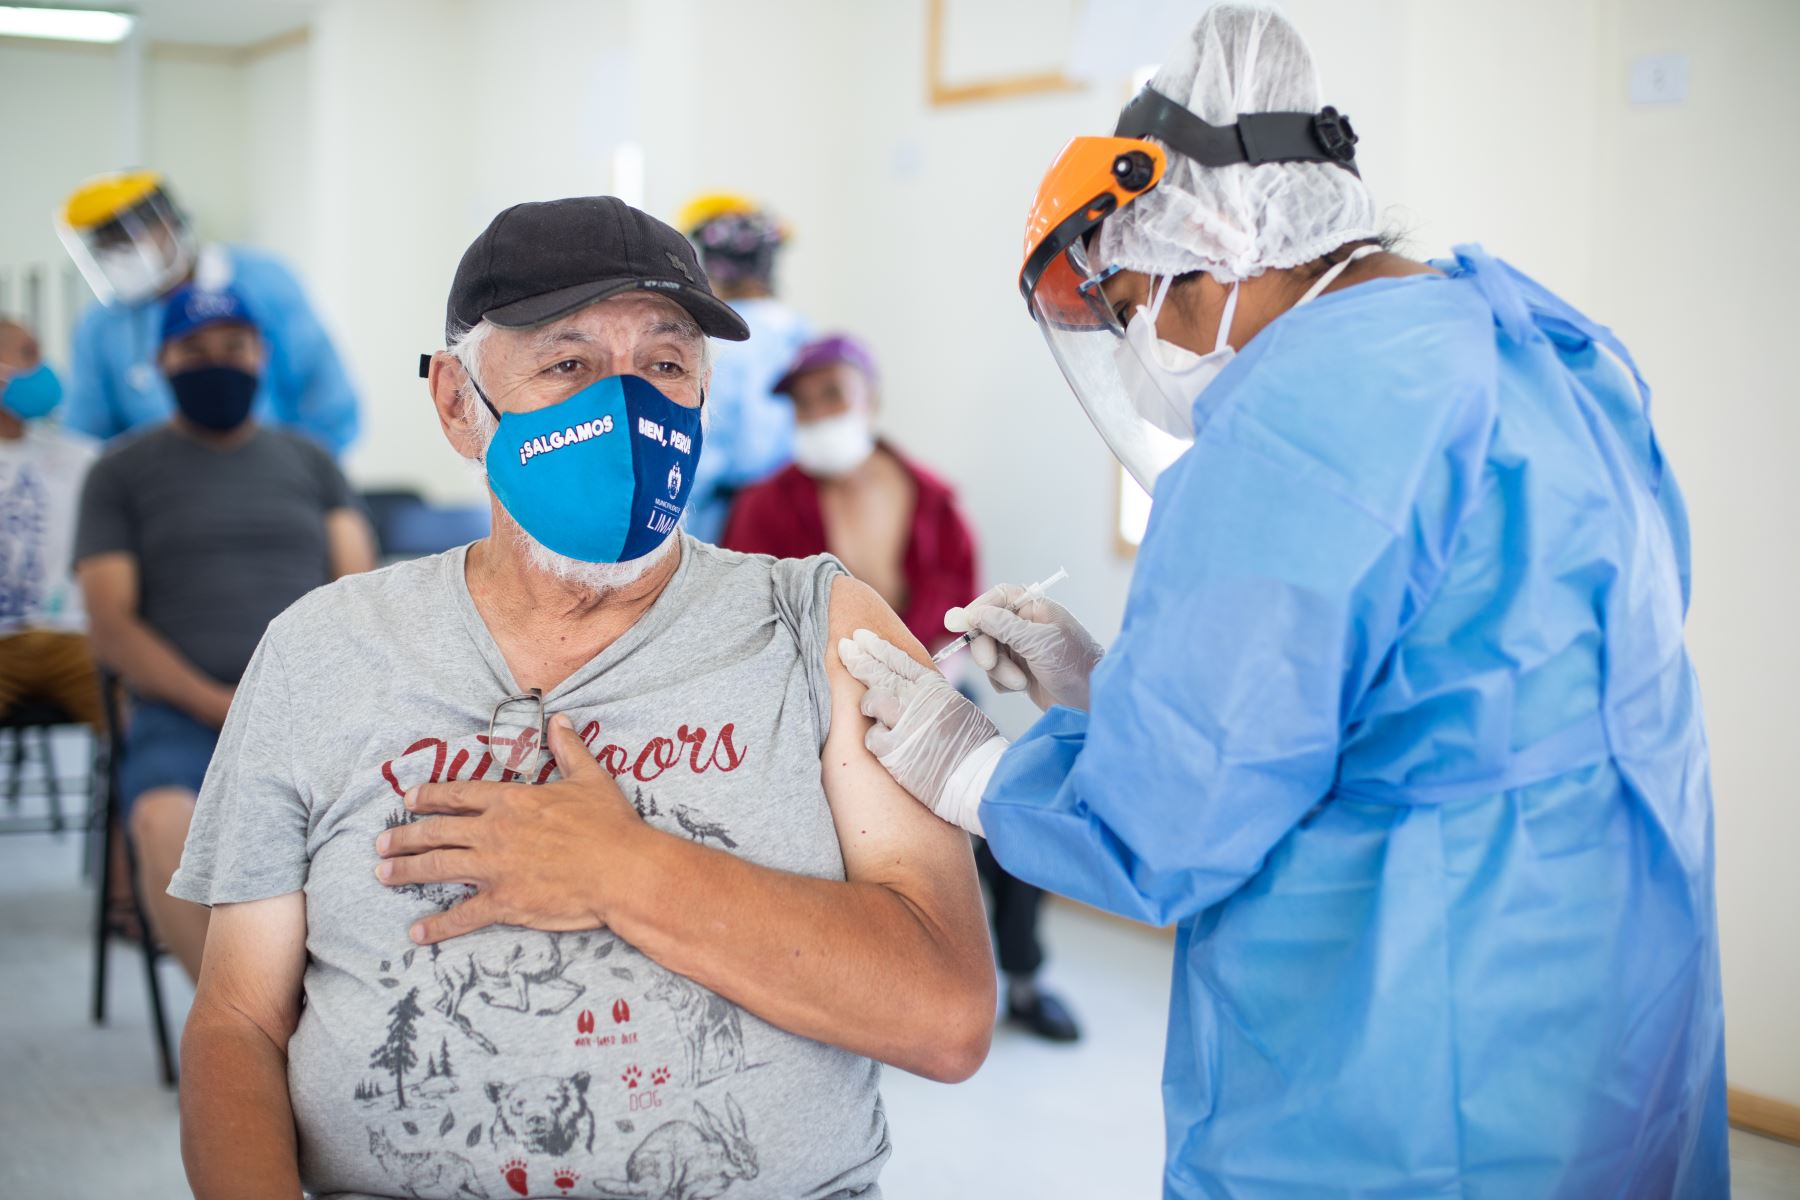 Este lunes 29 de marzo se iniciará la inoculación de adultos mayores de 80 años, durante cuatro días, en un vacunatorio implementado en la clínica Javier Prado, en San Isidro. Foto: ANDINA/difusión.